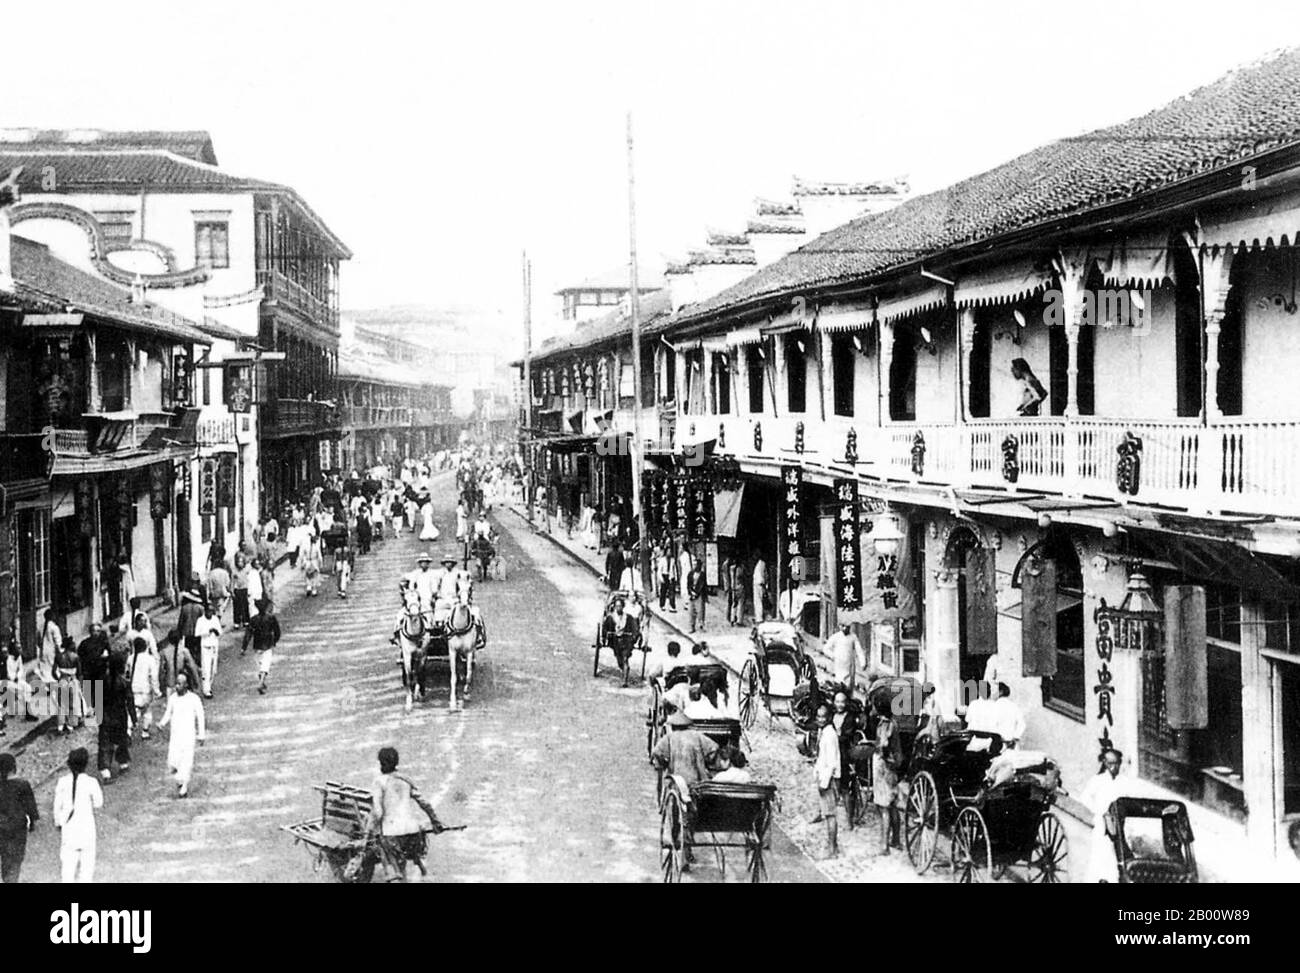 Chine : chevaux et pièges sur la route Fuzhou de Shanghai, c. 1900. L'attention internationale à Shanghai s'est accrue au XIXe siècle en raison de son potentiel économique et commercial sur le fleuve Yangtze. Pendant la première Guerre de l'opium (1839-1842), les forces britanniques détenaient temporairement la ville. La guerre s'est terminée par le Traité de Nanjing de 1842, ouvrant Shanghai et d'autres ports au commerce international. En 1863, la colonie britannique, située au sud de Suzhou creek (district de Huangpu), et la colonie américaine, au nord de Suzhou creek (district de Hongkou), se sont jointes pour former la colonie internationale. Banque D'Images